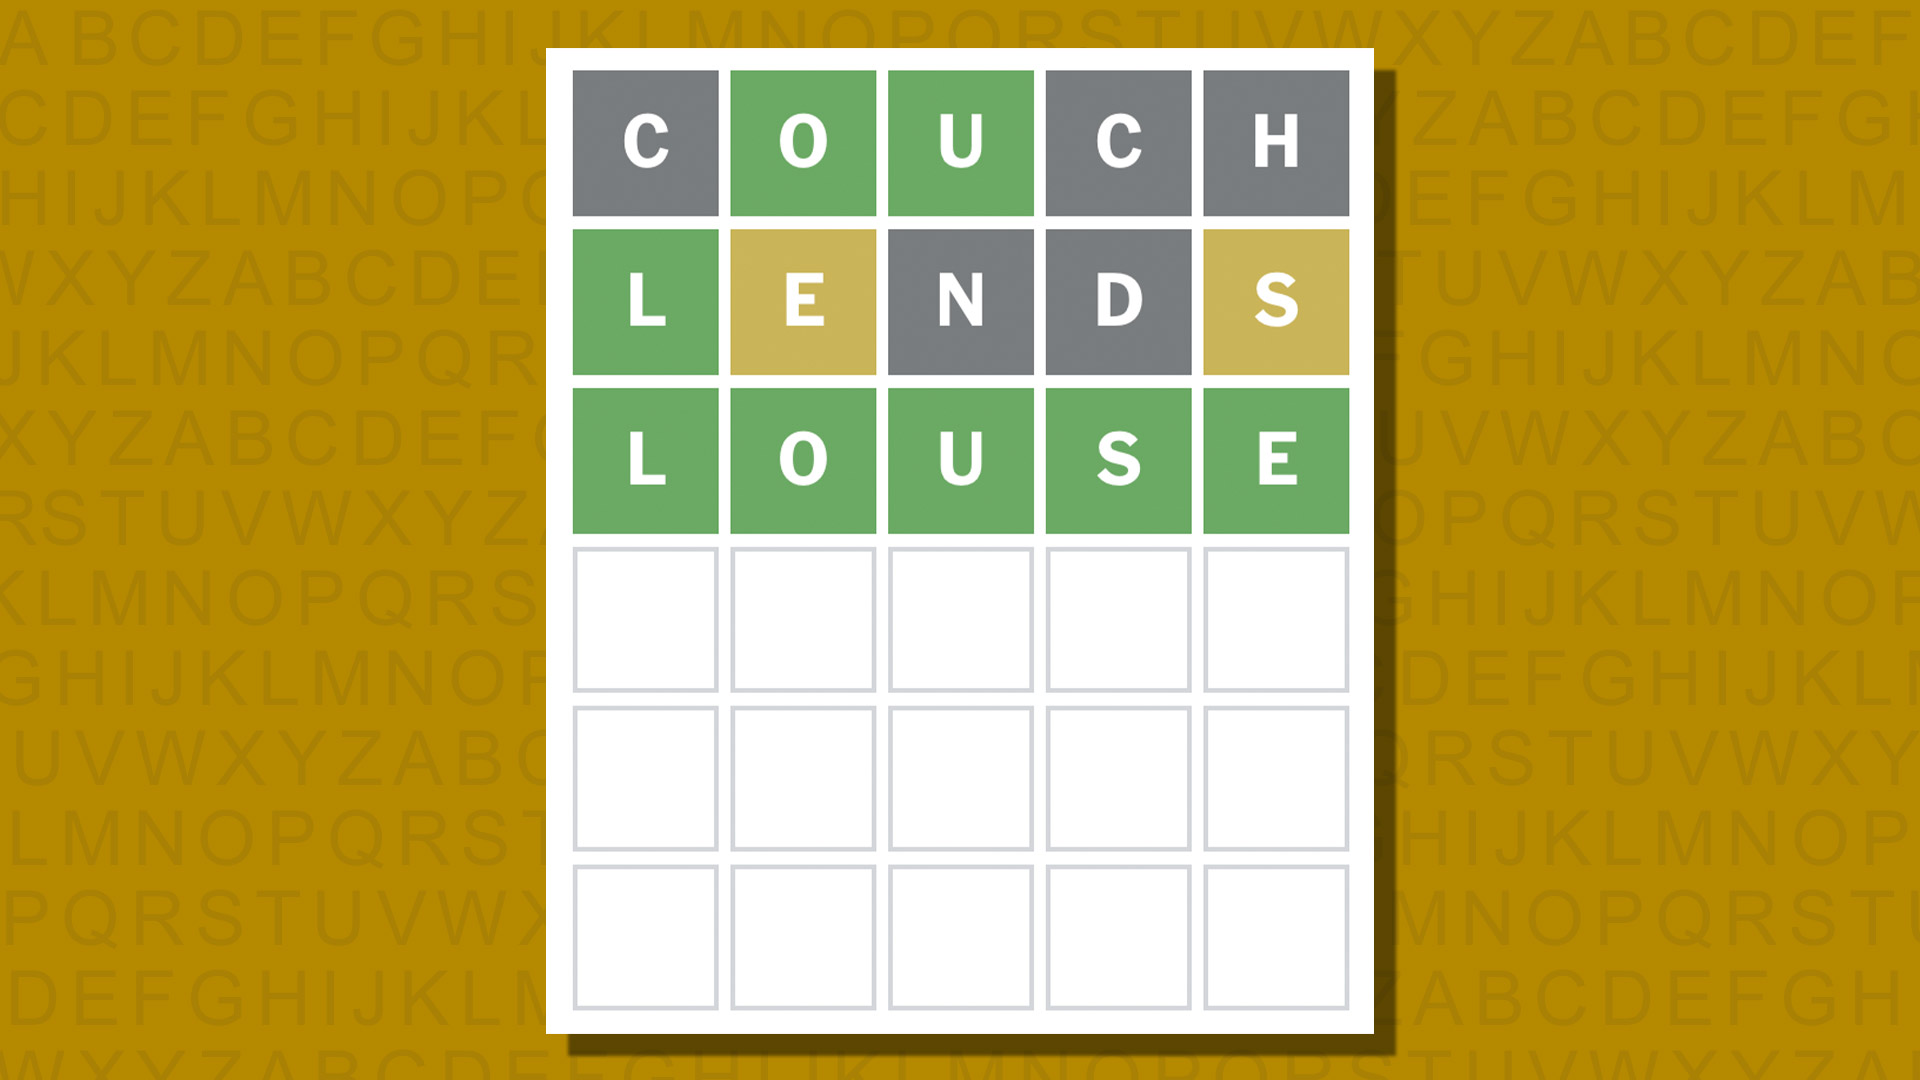 Ответ в формате Word для игры 1027 на желтом фоне